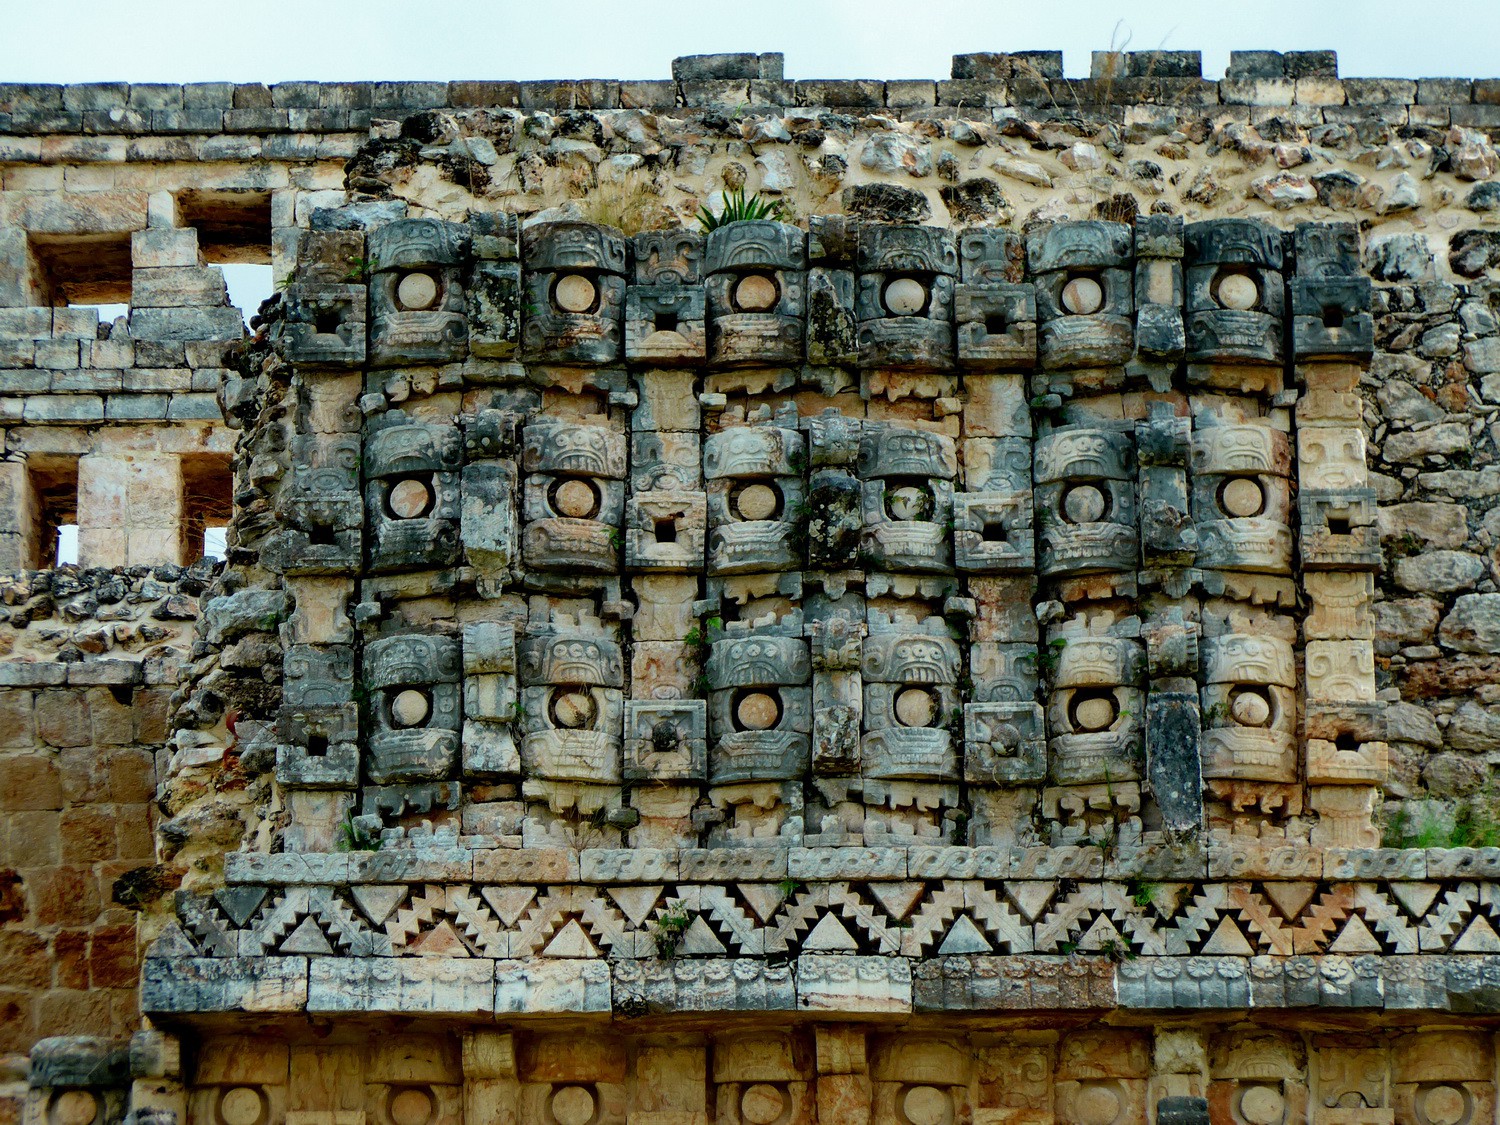 Facade of El palacio de los Mascarones (Place of masks) in Kabáh with the rain god Chac